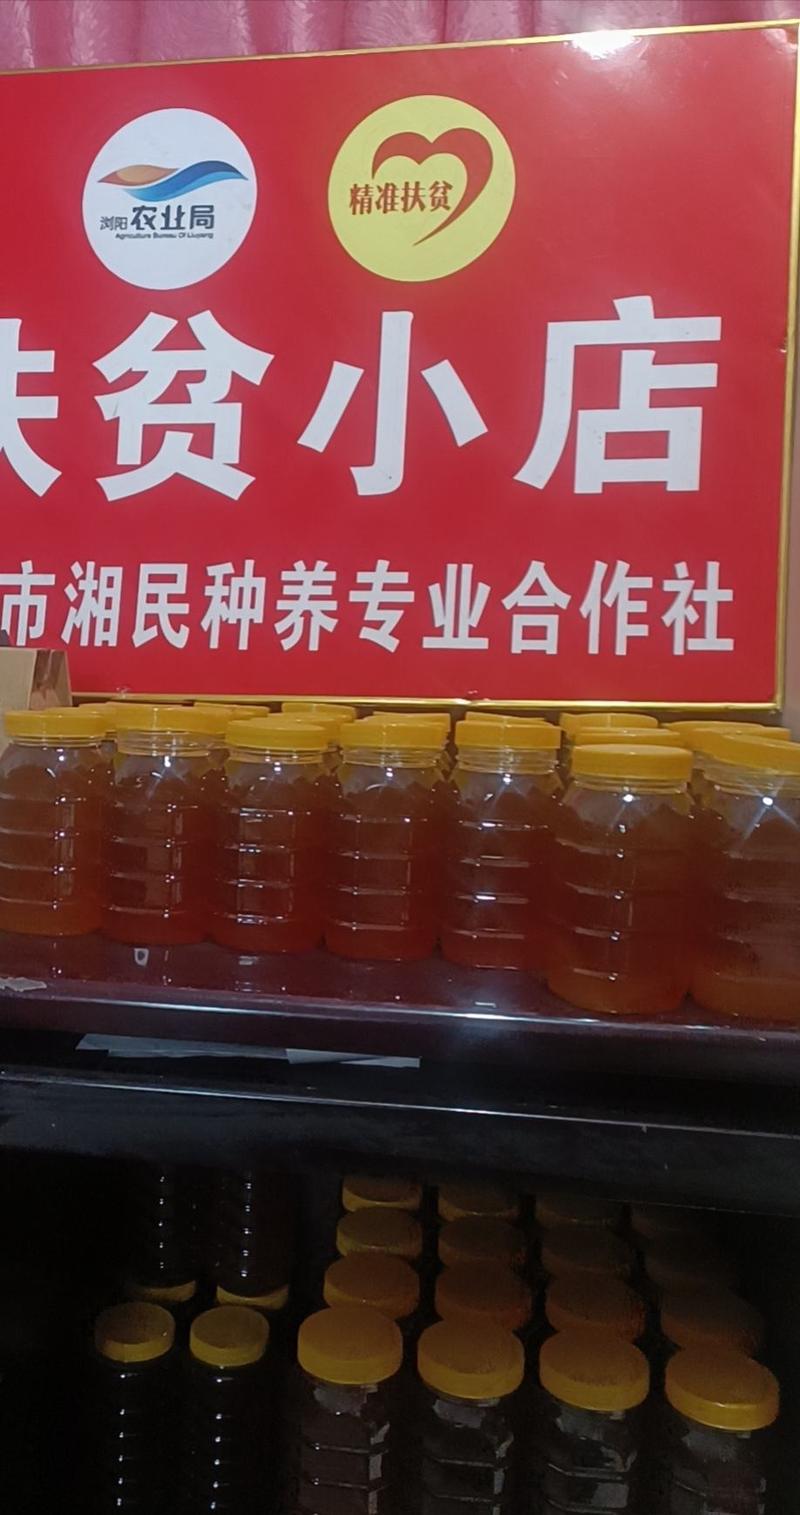 【全国包邮】蜂蜜土蜂蜜，湖南浏阳蜂蜜2斤/瓶，欢迎下单